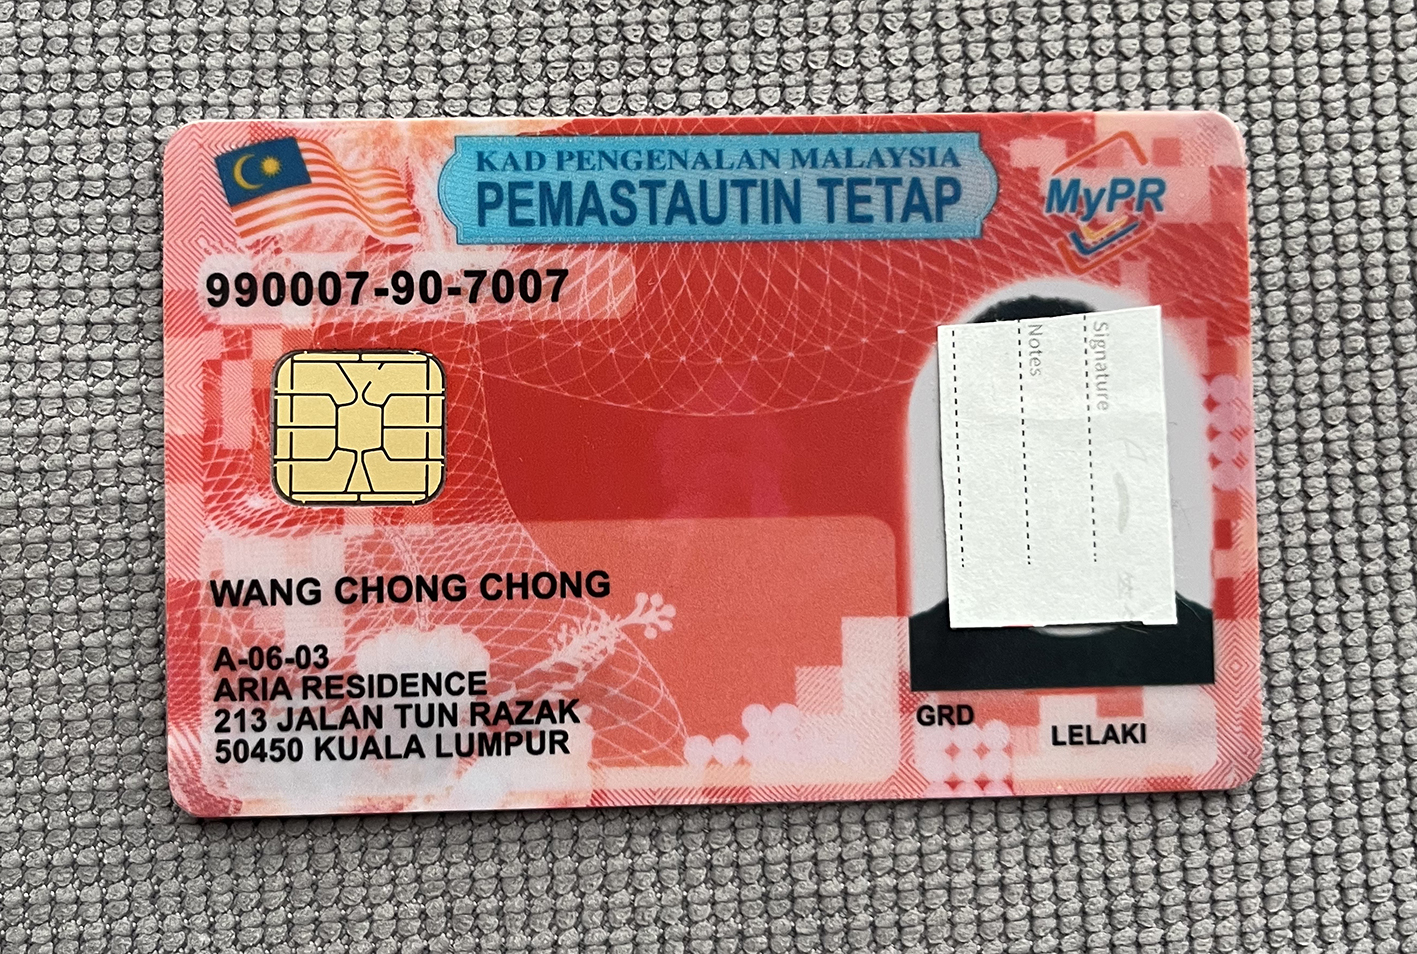 马来红卡正面.jpg 马来西亚红卡永居PR卡 亚洲